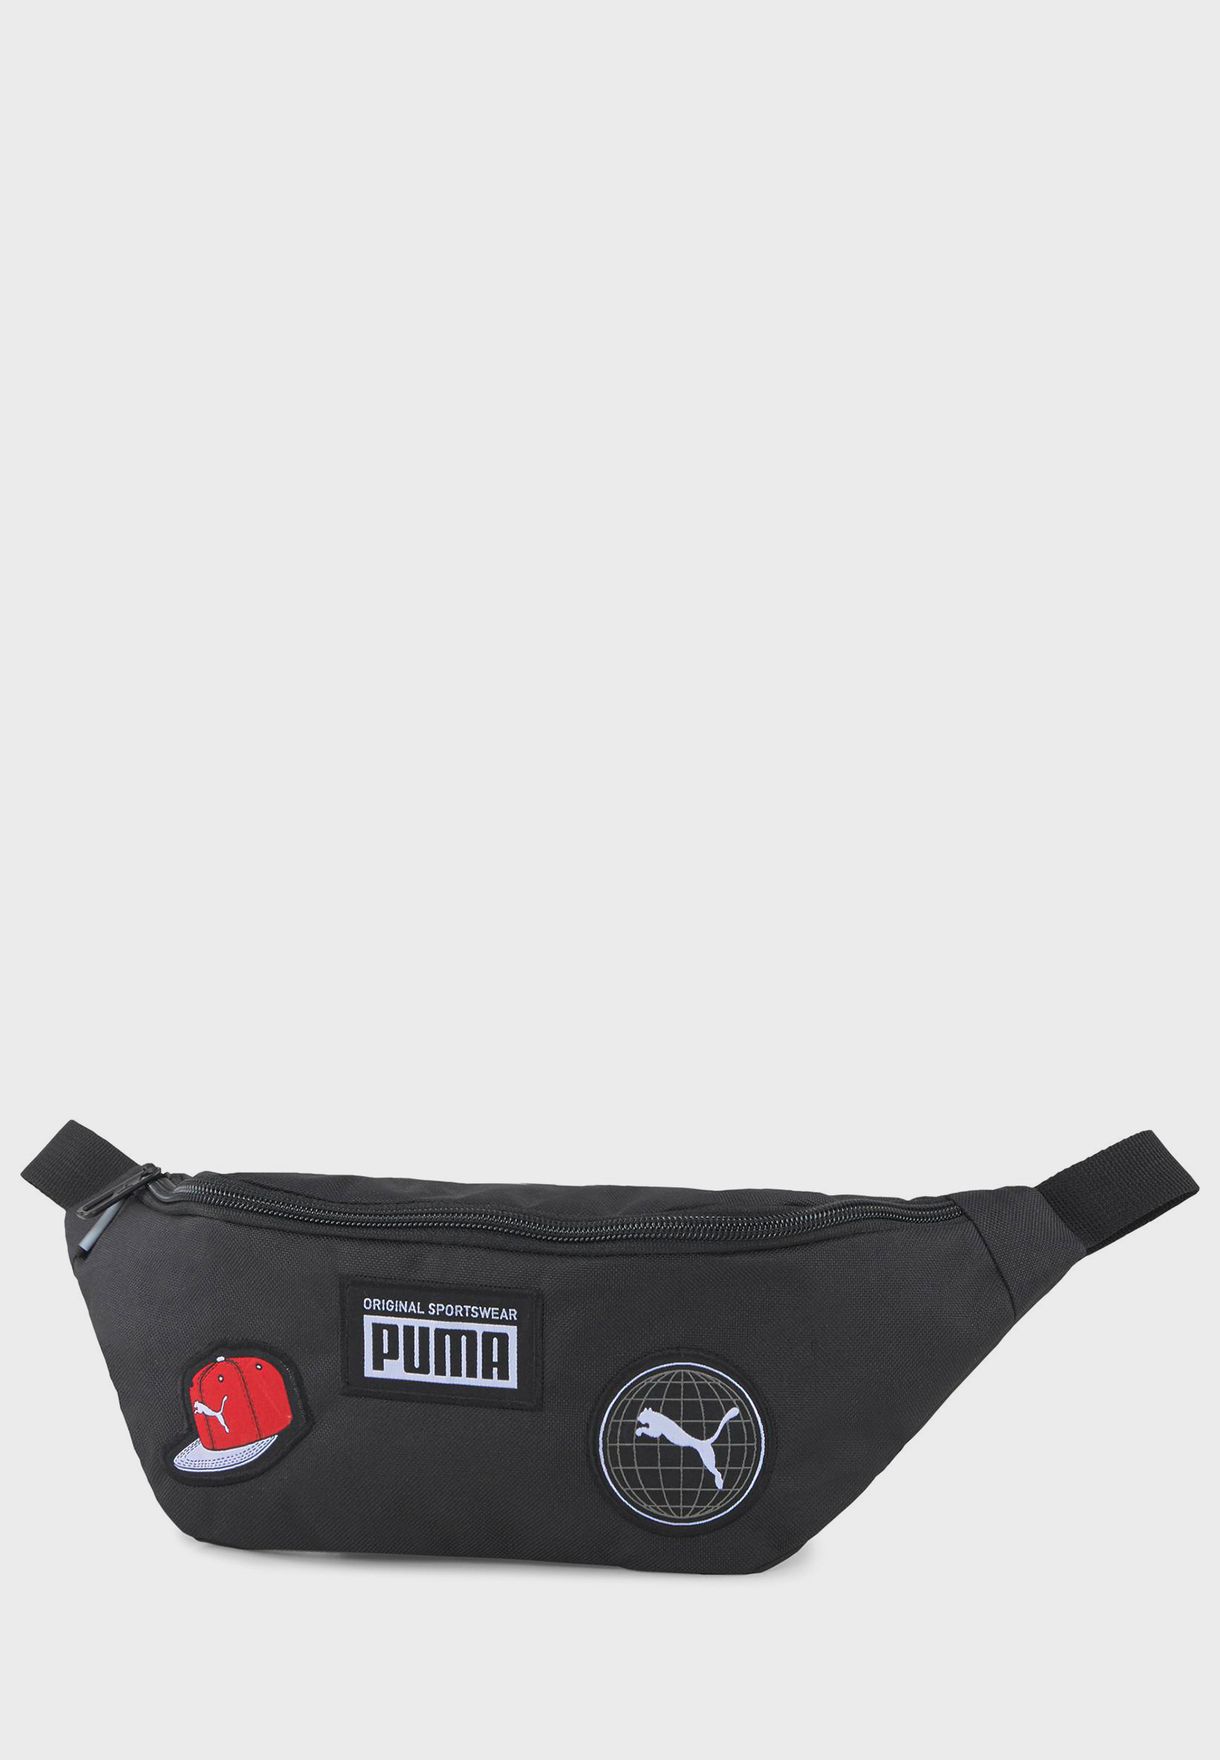 Puma Patch Men Bag